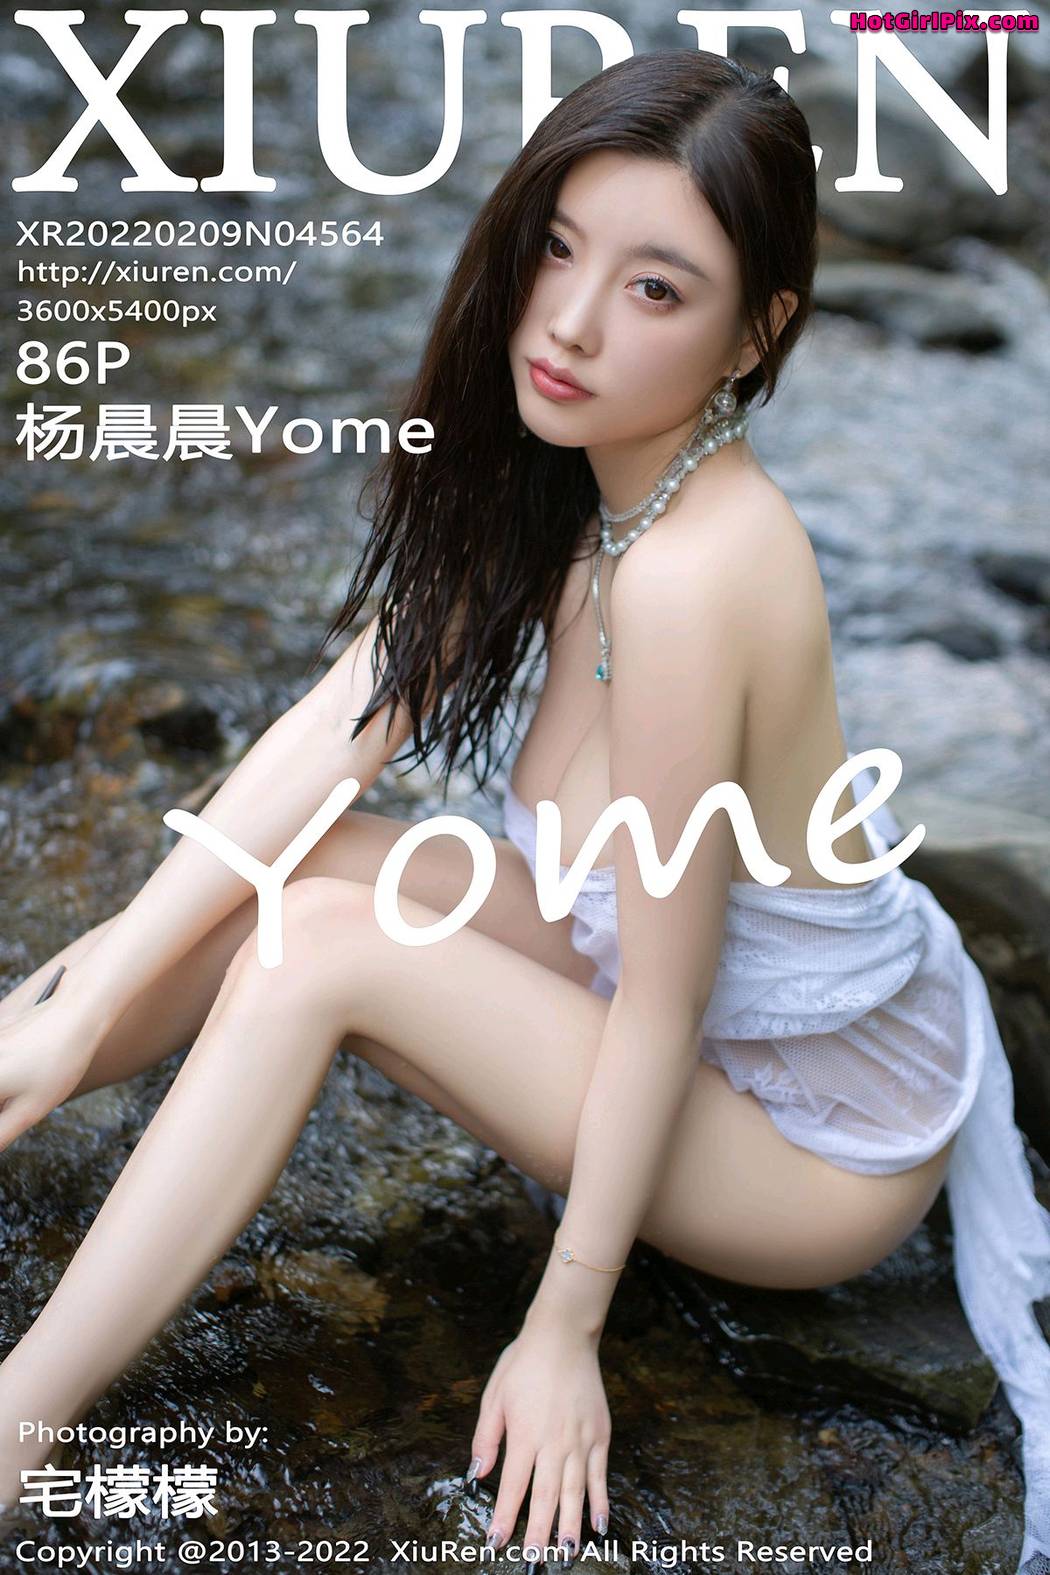 [XIUREN] No.4564 Yang Chen Chen 杨晨晨Yome (Yang Chen Chen 杨晨晨sugar) Cover Photo